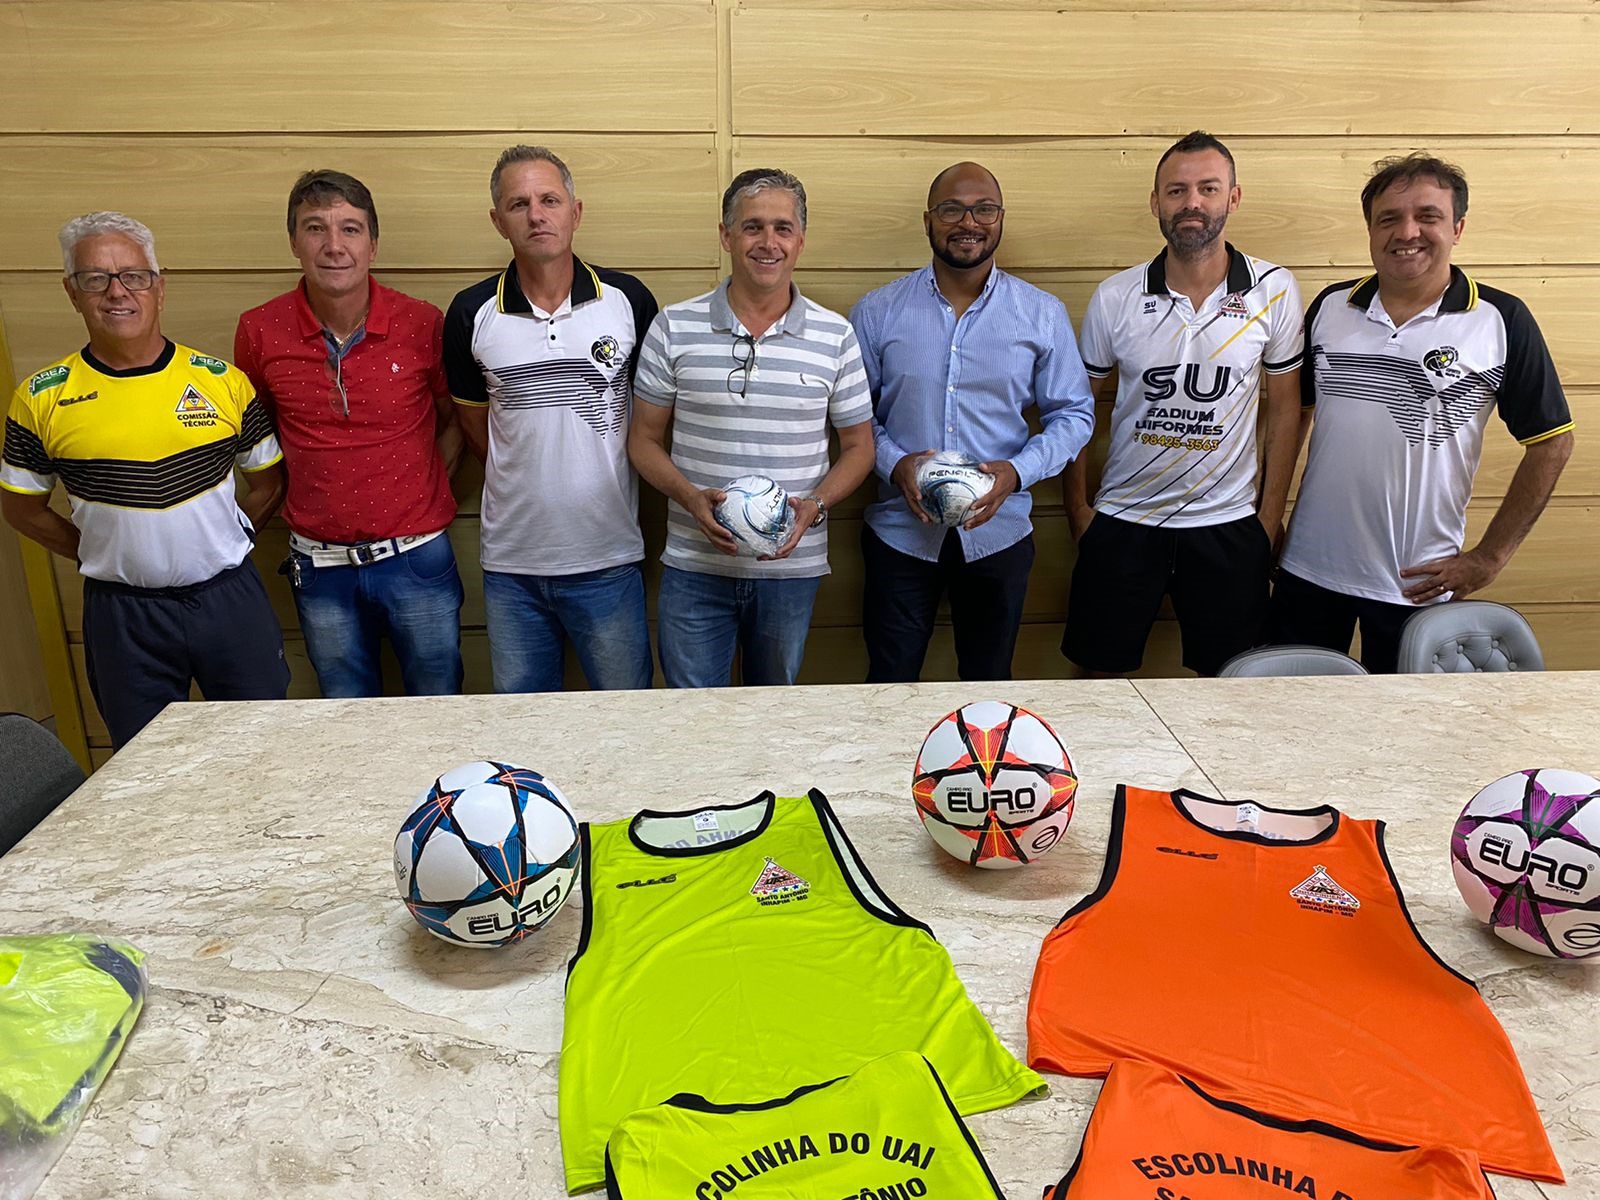 Prefeitura de Inhapim entrega kits esportivos para escolinhas de futebol e futsal